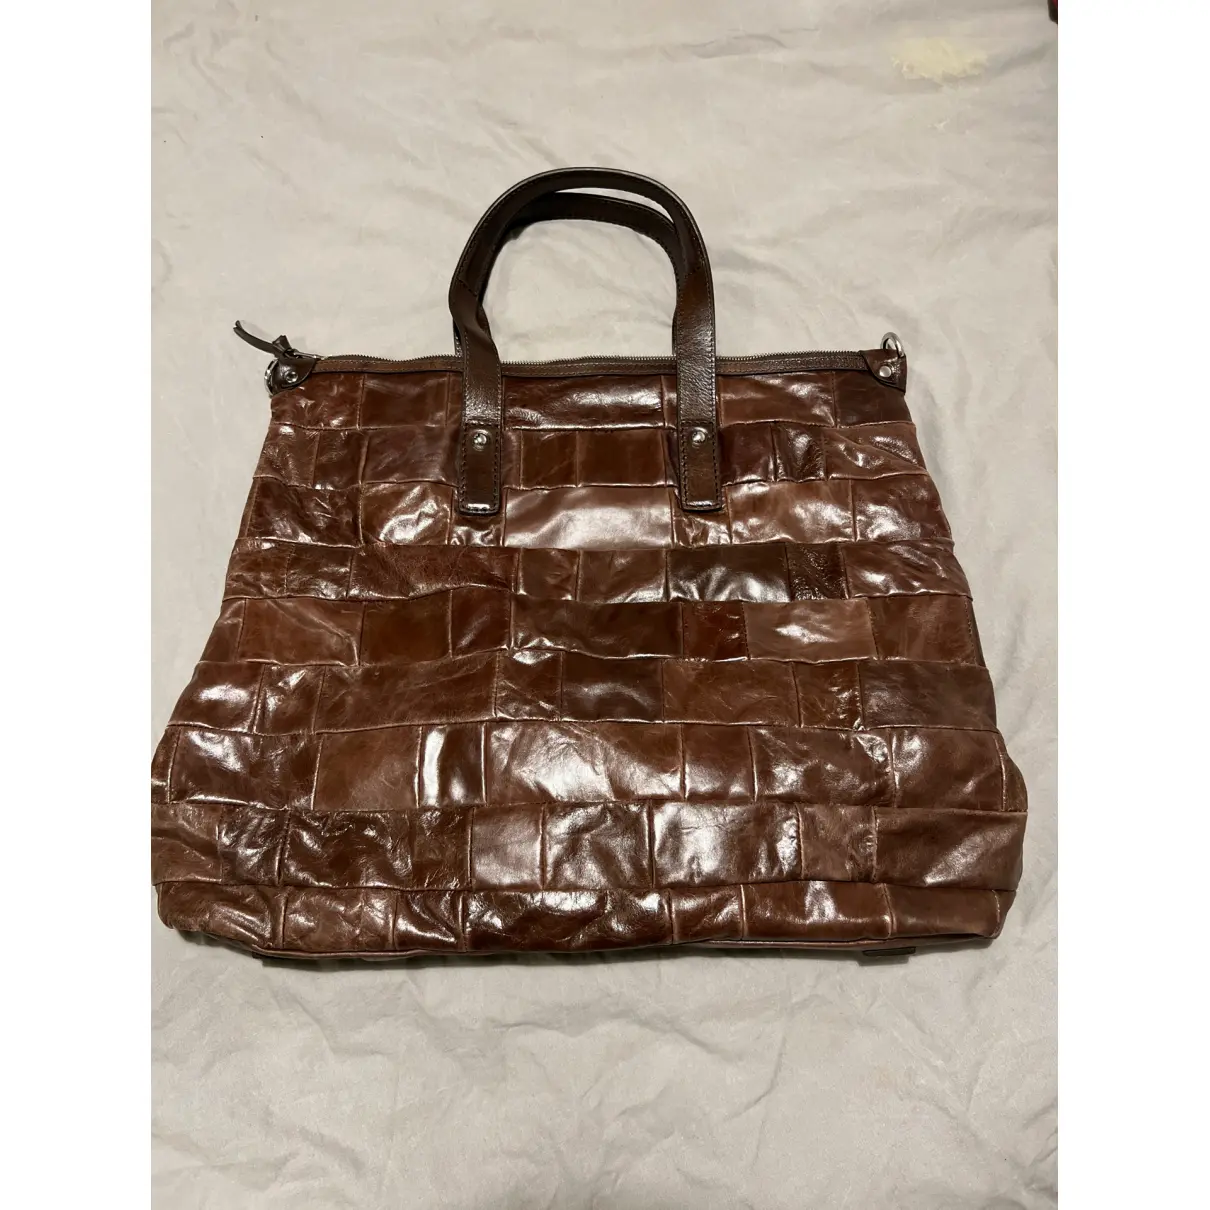 Buy D&G Leather bag online